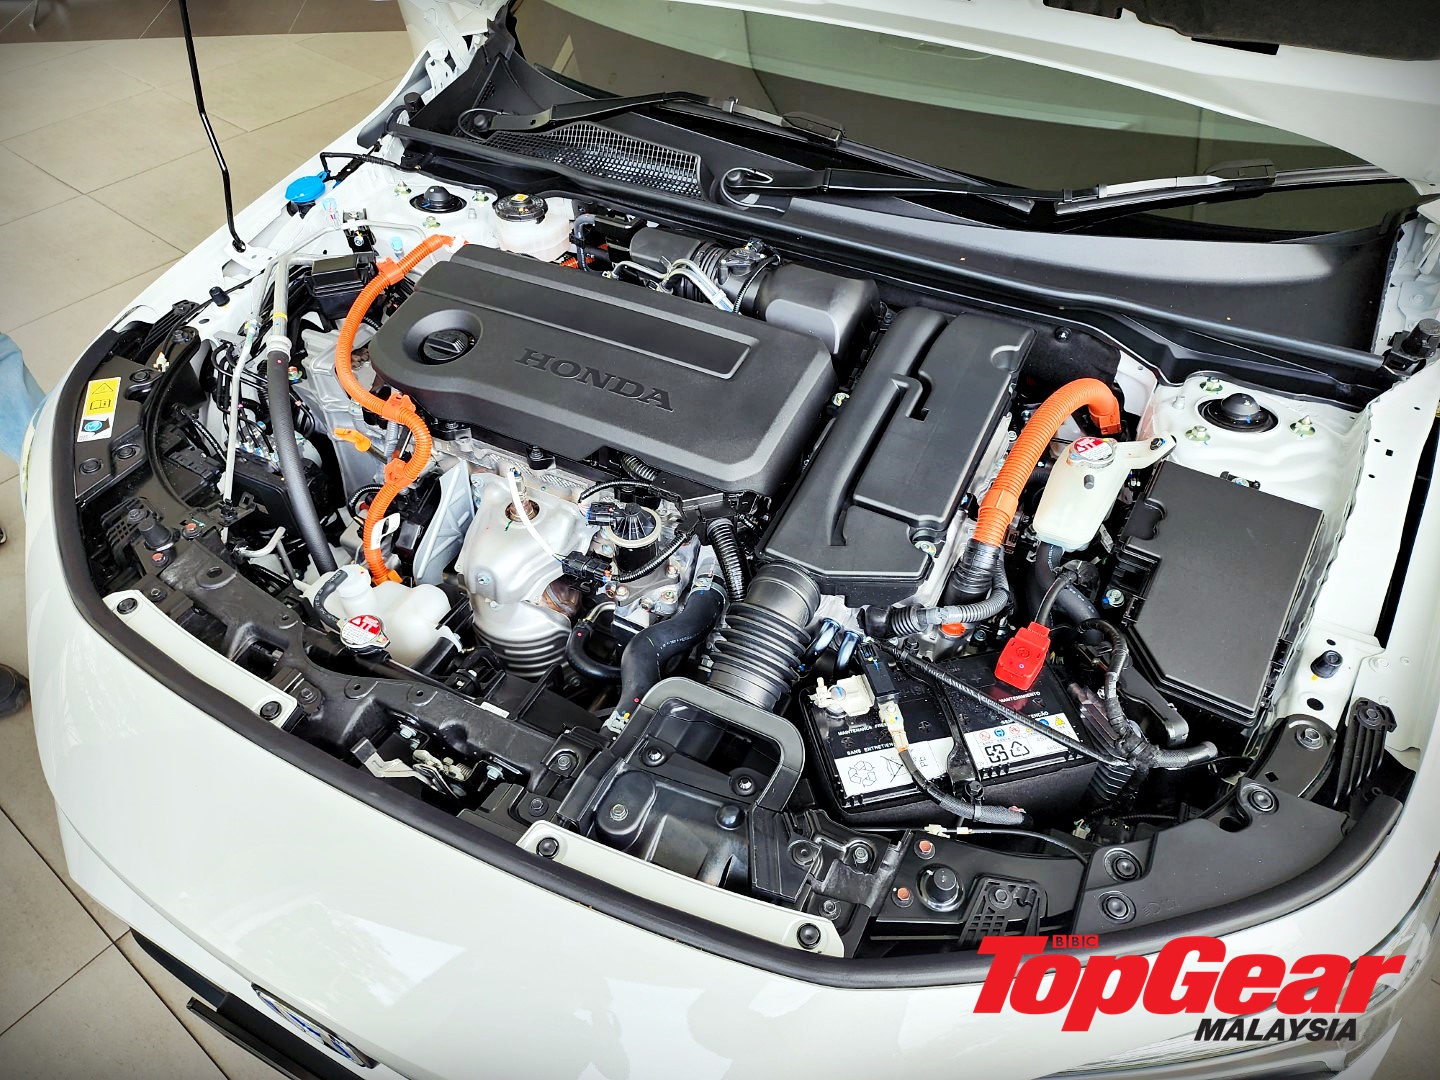 Honda Civic Hybrid engine